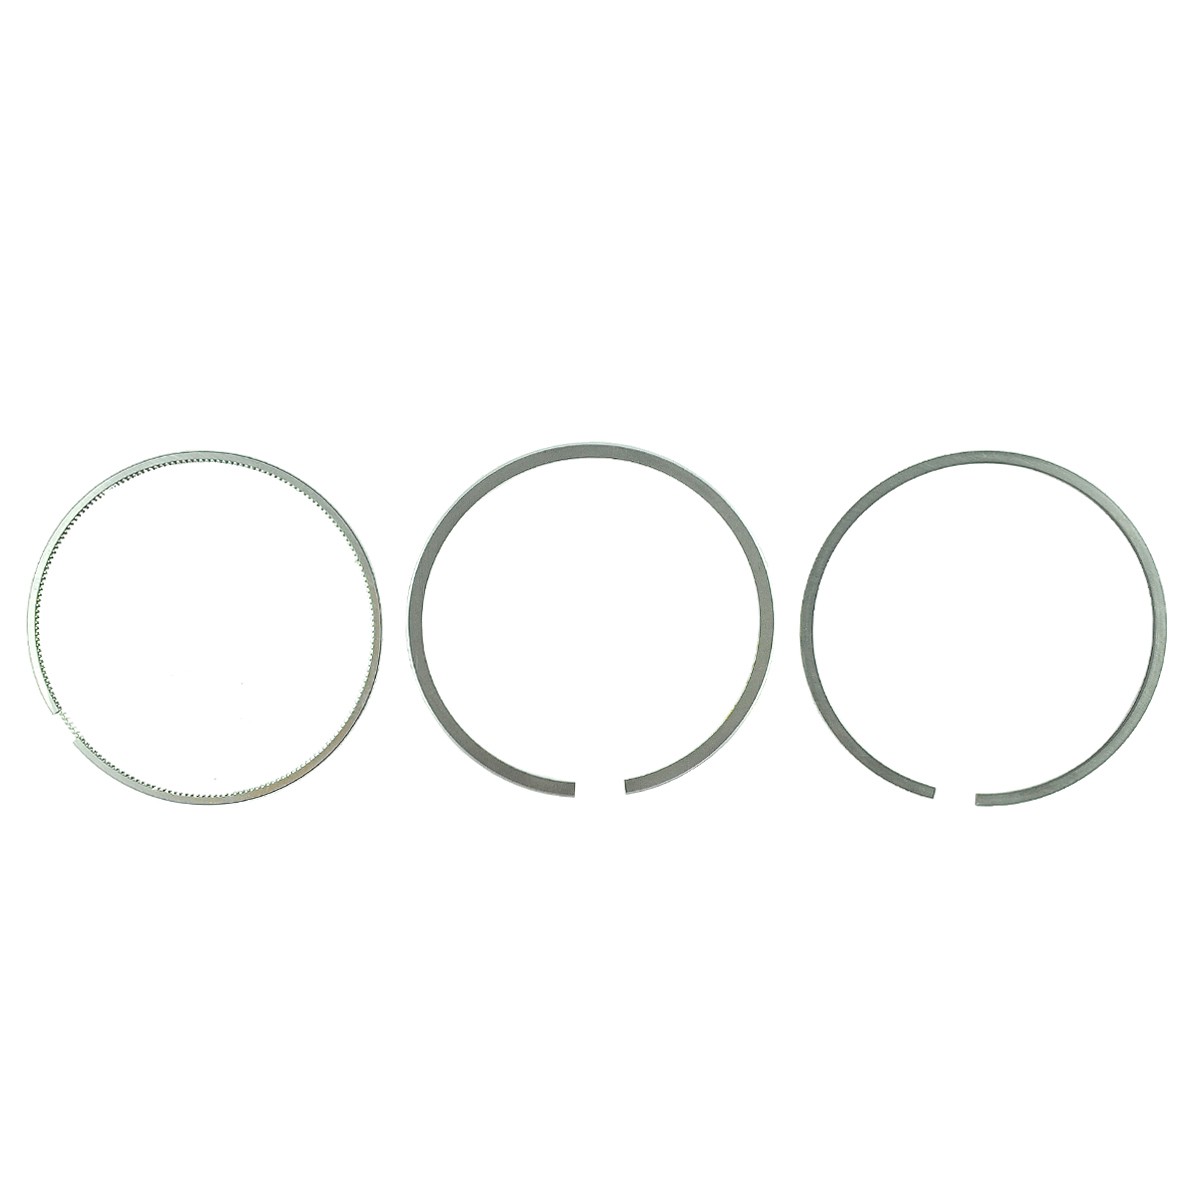 Piston rings / Ø 85 mm / 2.50 x 2.00 x 5.00 mm / Kubota D1302/D1402/V1902 / Kubota L-1/L2202/M4950 / 6-26-100-04